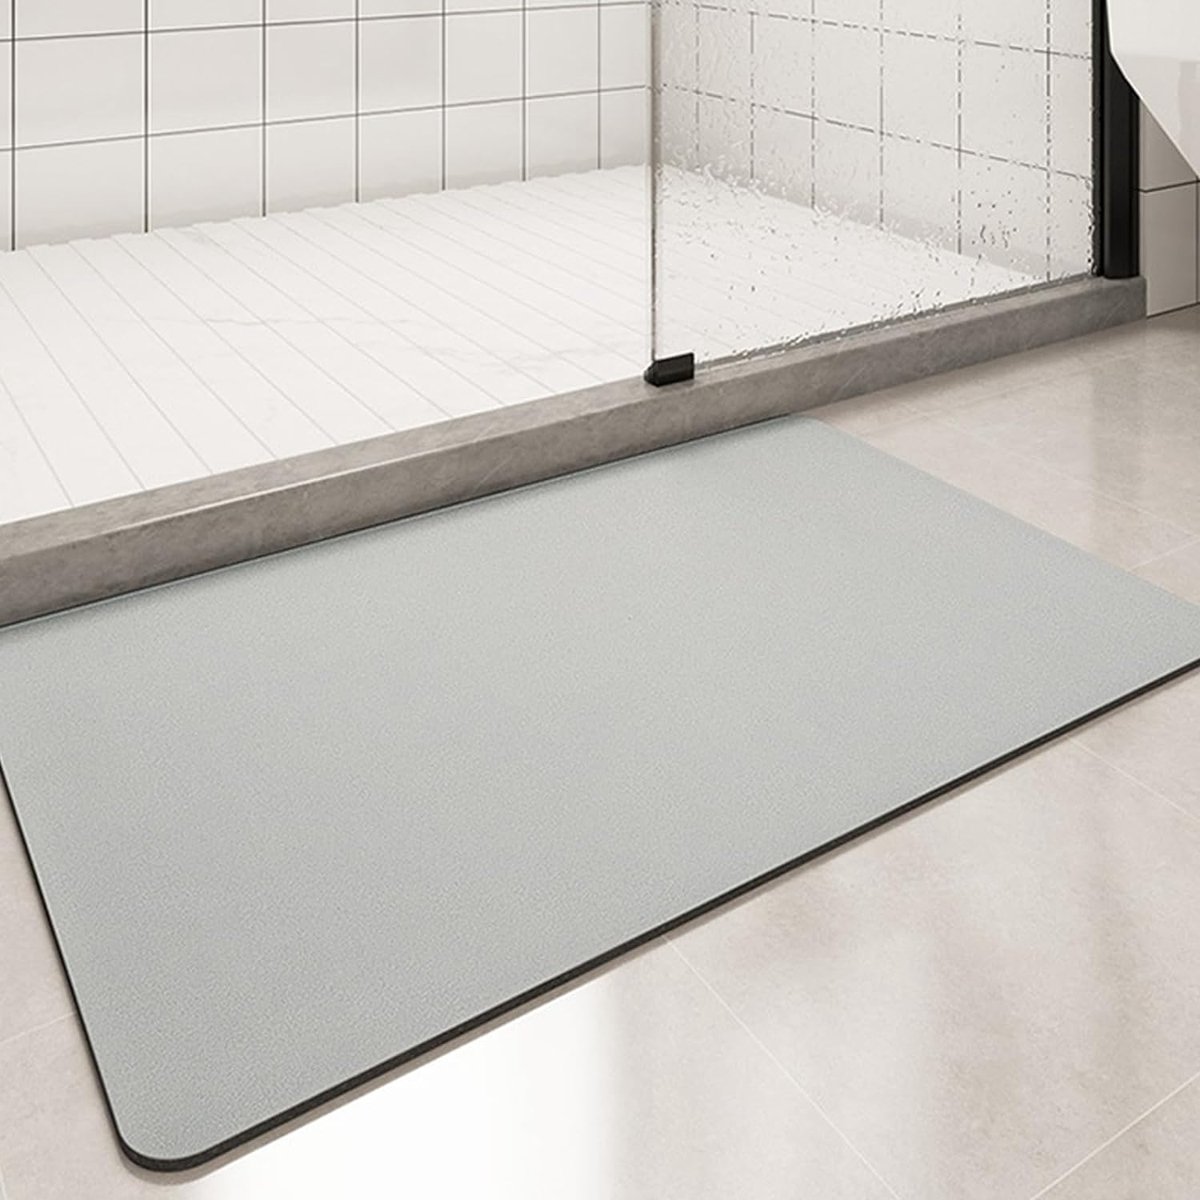 Badmat, antislip, super absorberende vloermat, sneldrogende badkamermat, absorberend badkamertapijt voor thuis, eenvoudige badkamermat (lichtgrijs, 80 x 50 cm)